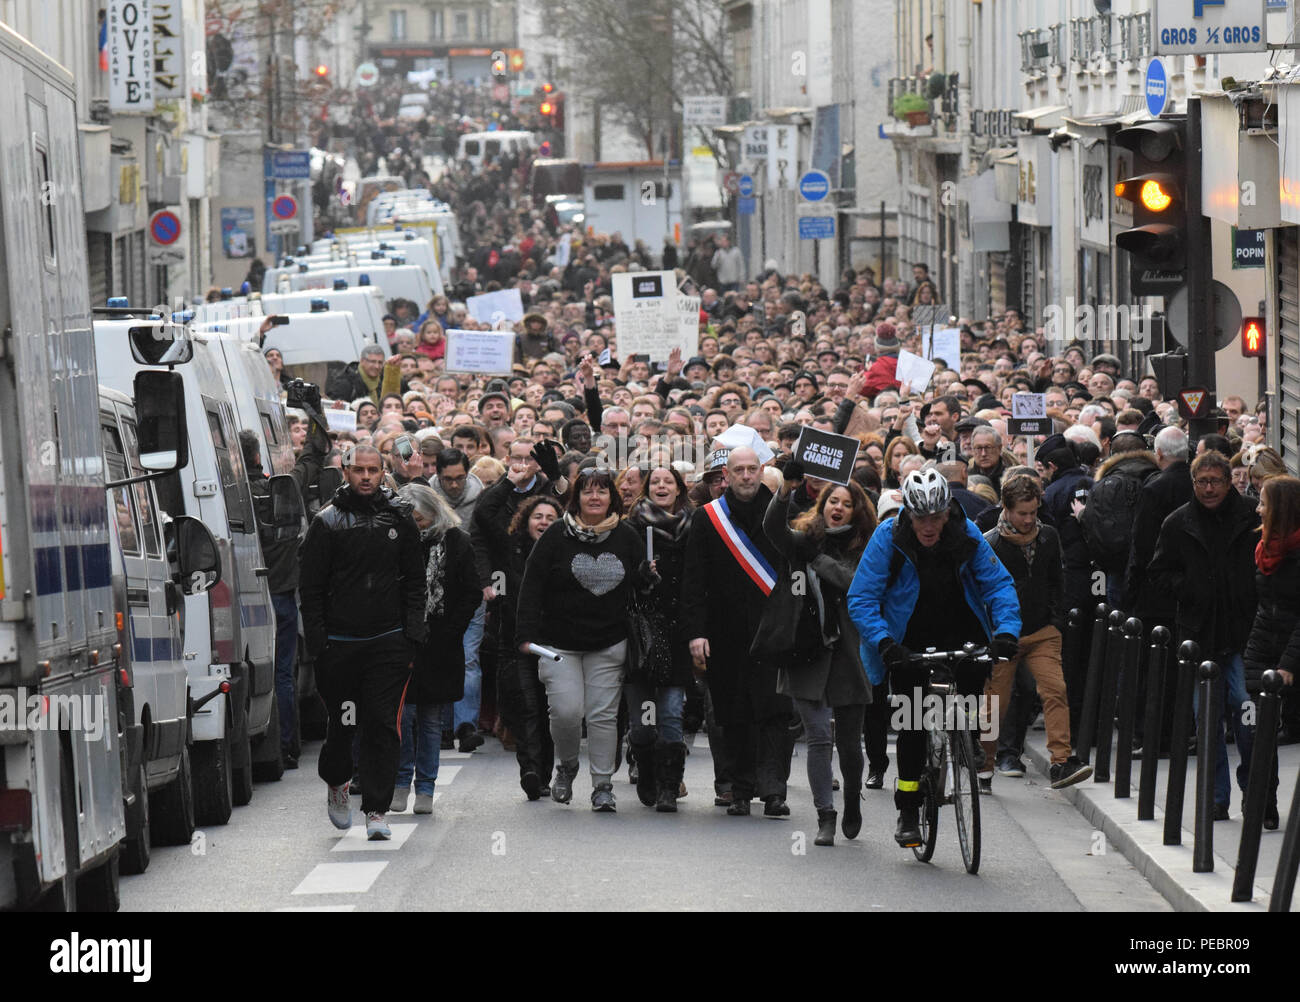 Januar 11, 2015 - Paris, Frankreich: Mehr als 1,5 Millionen Menschen an einem Marsch der Freiheit der Meinungsäußerung und Protest gegen den Terrorismus in der französischen Hauptstadt zu unterstützen, nachdem drei Tage des Terrors 17 tote Links. Vier Millionen Menschen auf dem Land in einem "Arche Republicaine" (Republikaner März) die Einheit der Nation feiern im Angesicht terroristischer Bedrohungen demonstriert. Tausende Menschen hatten Fahnen oder Cartoons, die sich auf Charlie Hebdo, die satirische Zeitschrift, dessen Amt von islamistischen bewaffneten gezielt wurde früh in der Woche. La Grande Marche republicaine en Hommage aux Victimes de l'att Stockfoto